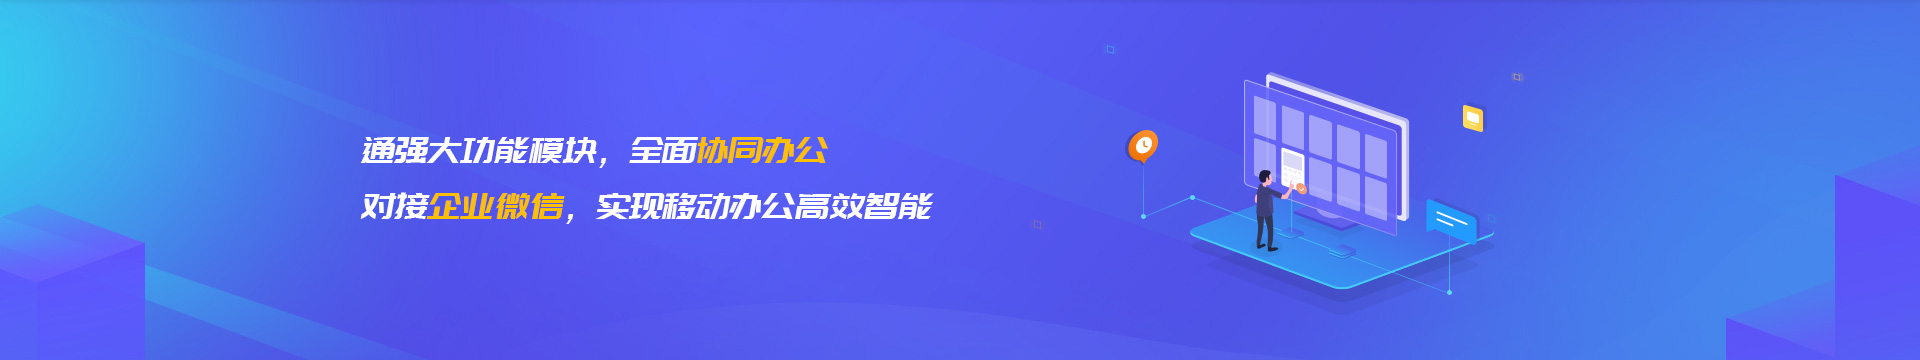 蚌埠企业微信开发